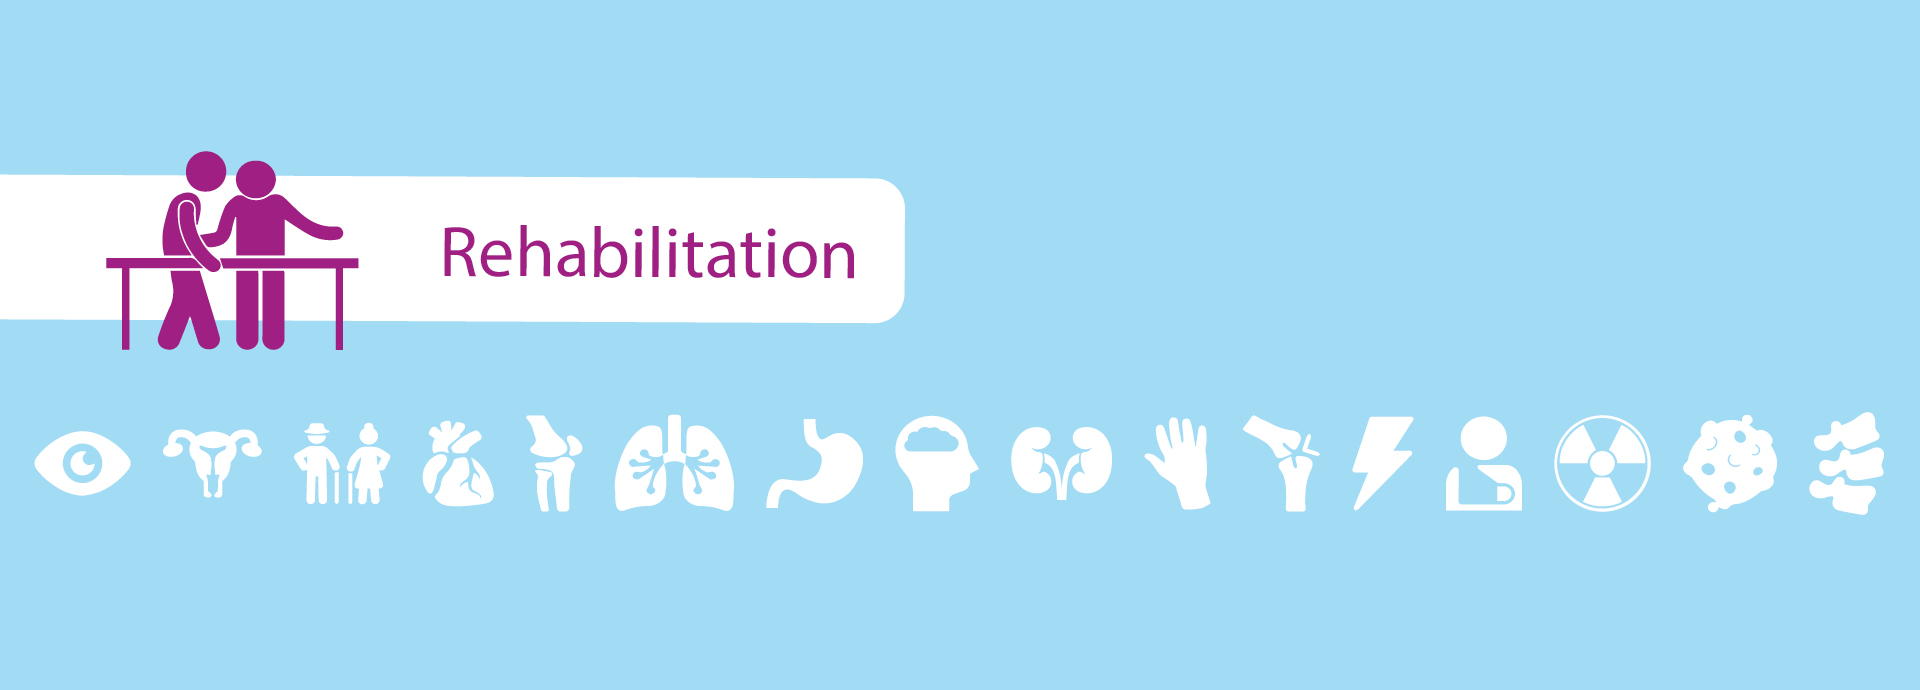 Grafik, auf der verschiedene Symbolbilder (zum Beispiel Organe) abgebildet sind. Das Symbol "Rehabilitation" ist hervorgehoben.  